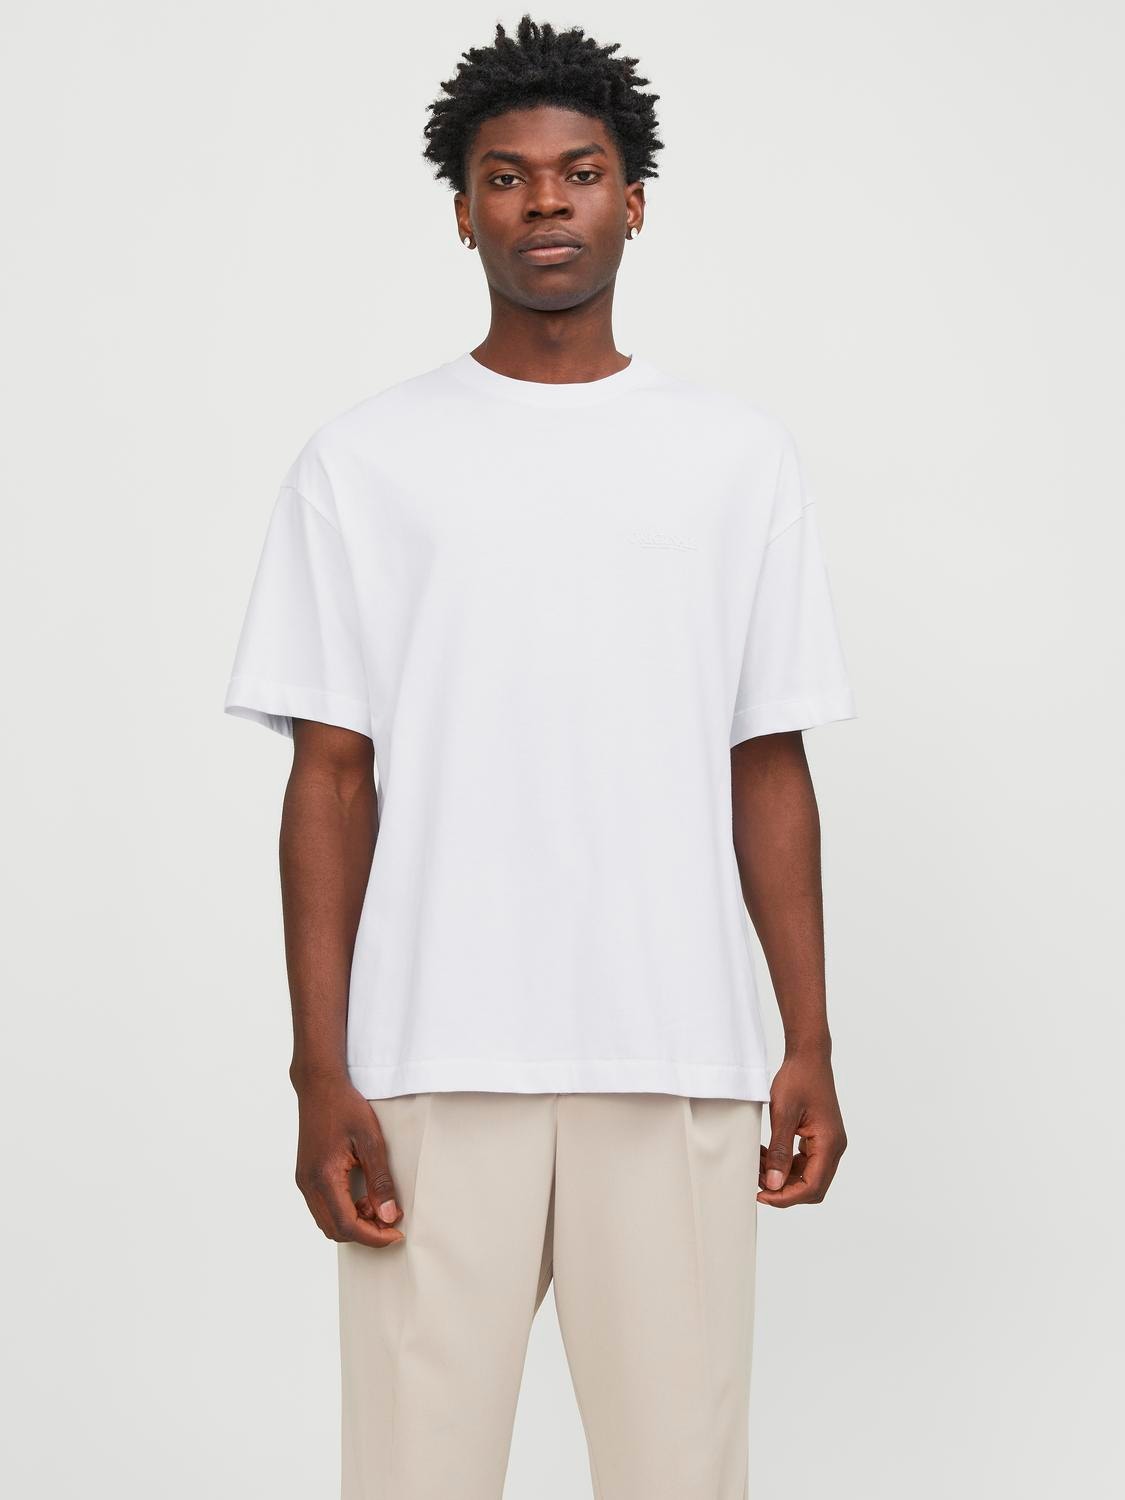 Jack & Jones T-shirt Estampar Decote Redondo -Bright White - 12251963